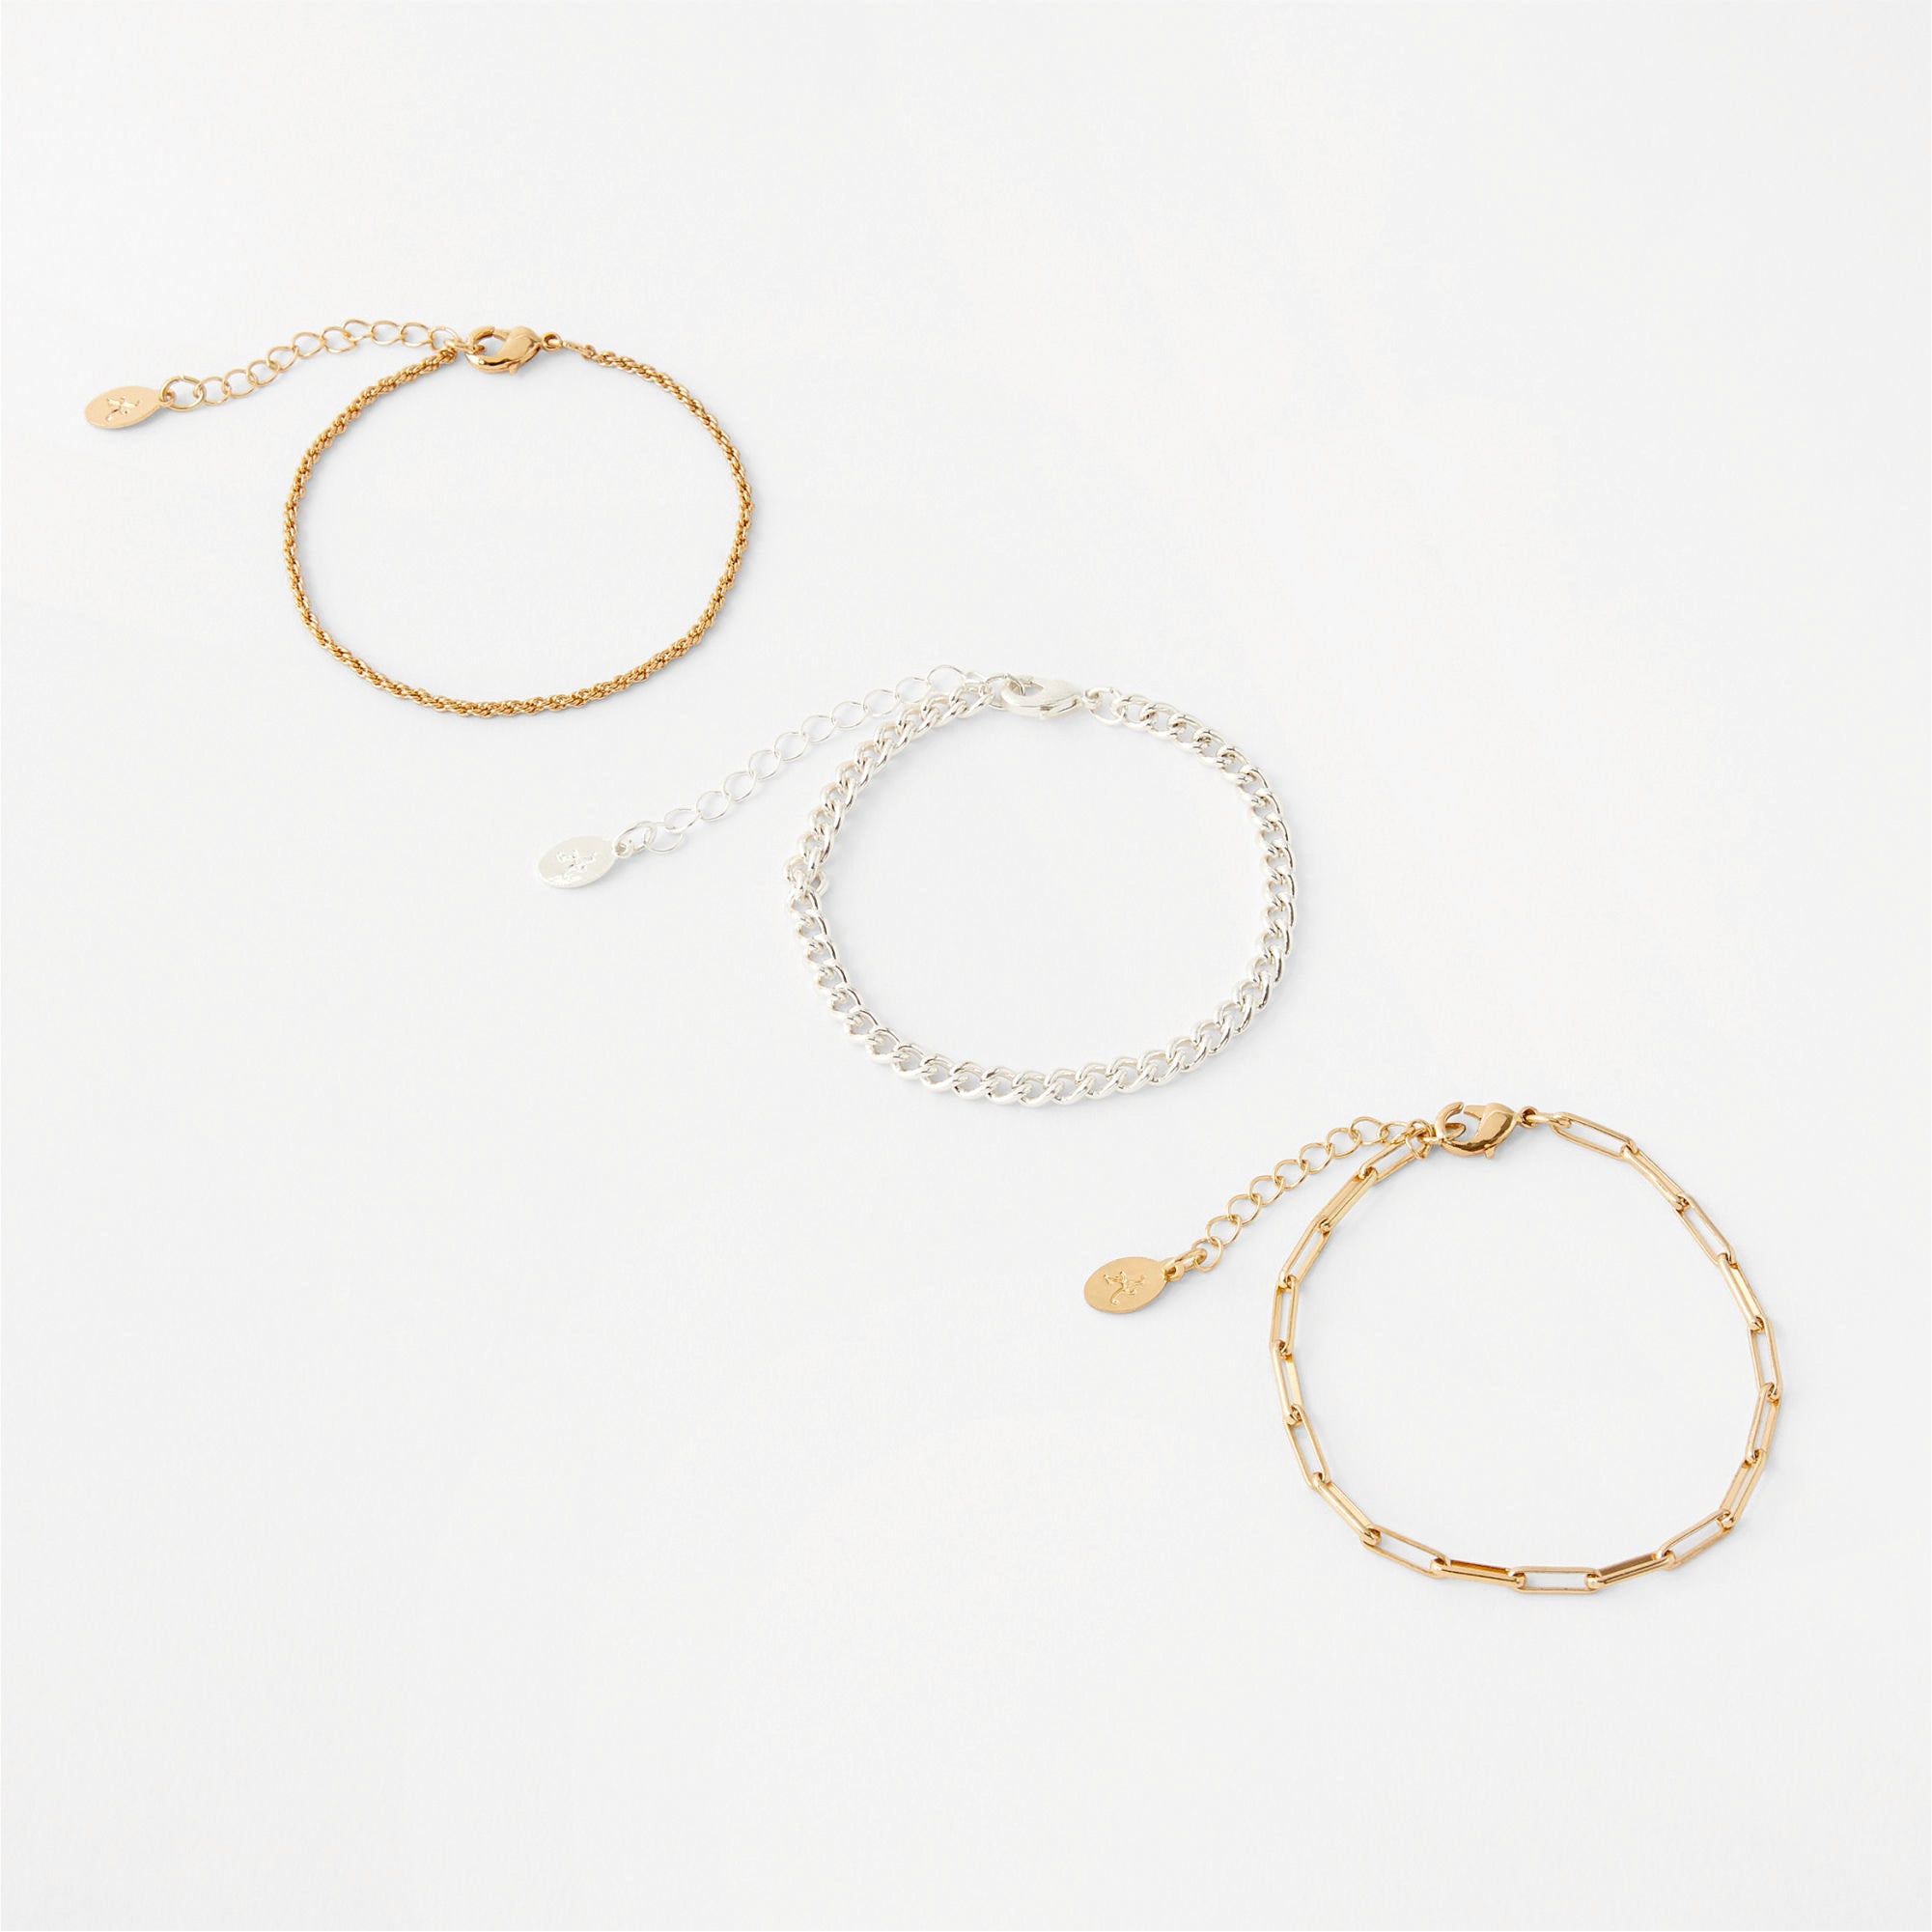 Accessorize London Women's Set of 3 Chain Bracelets